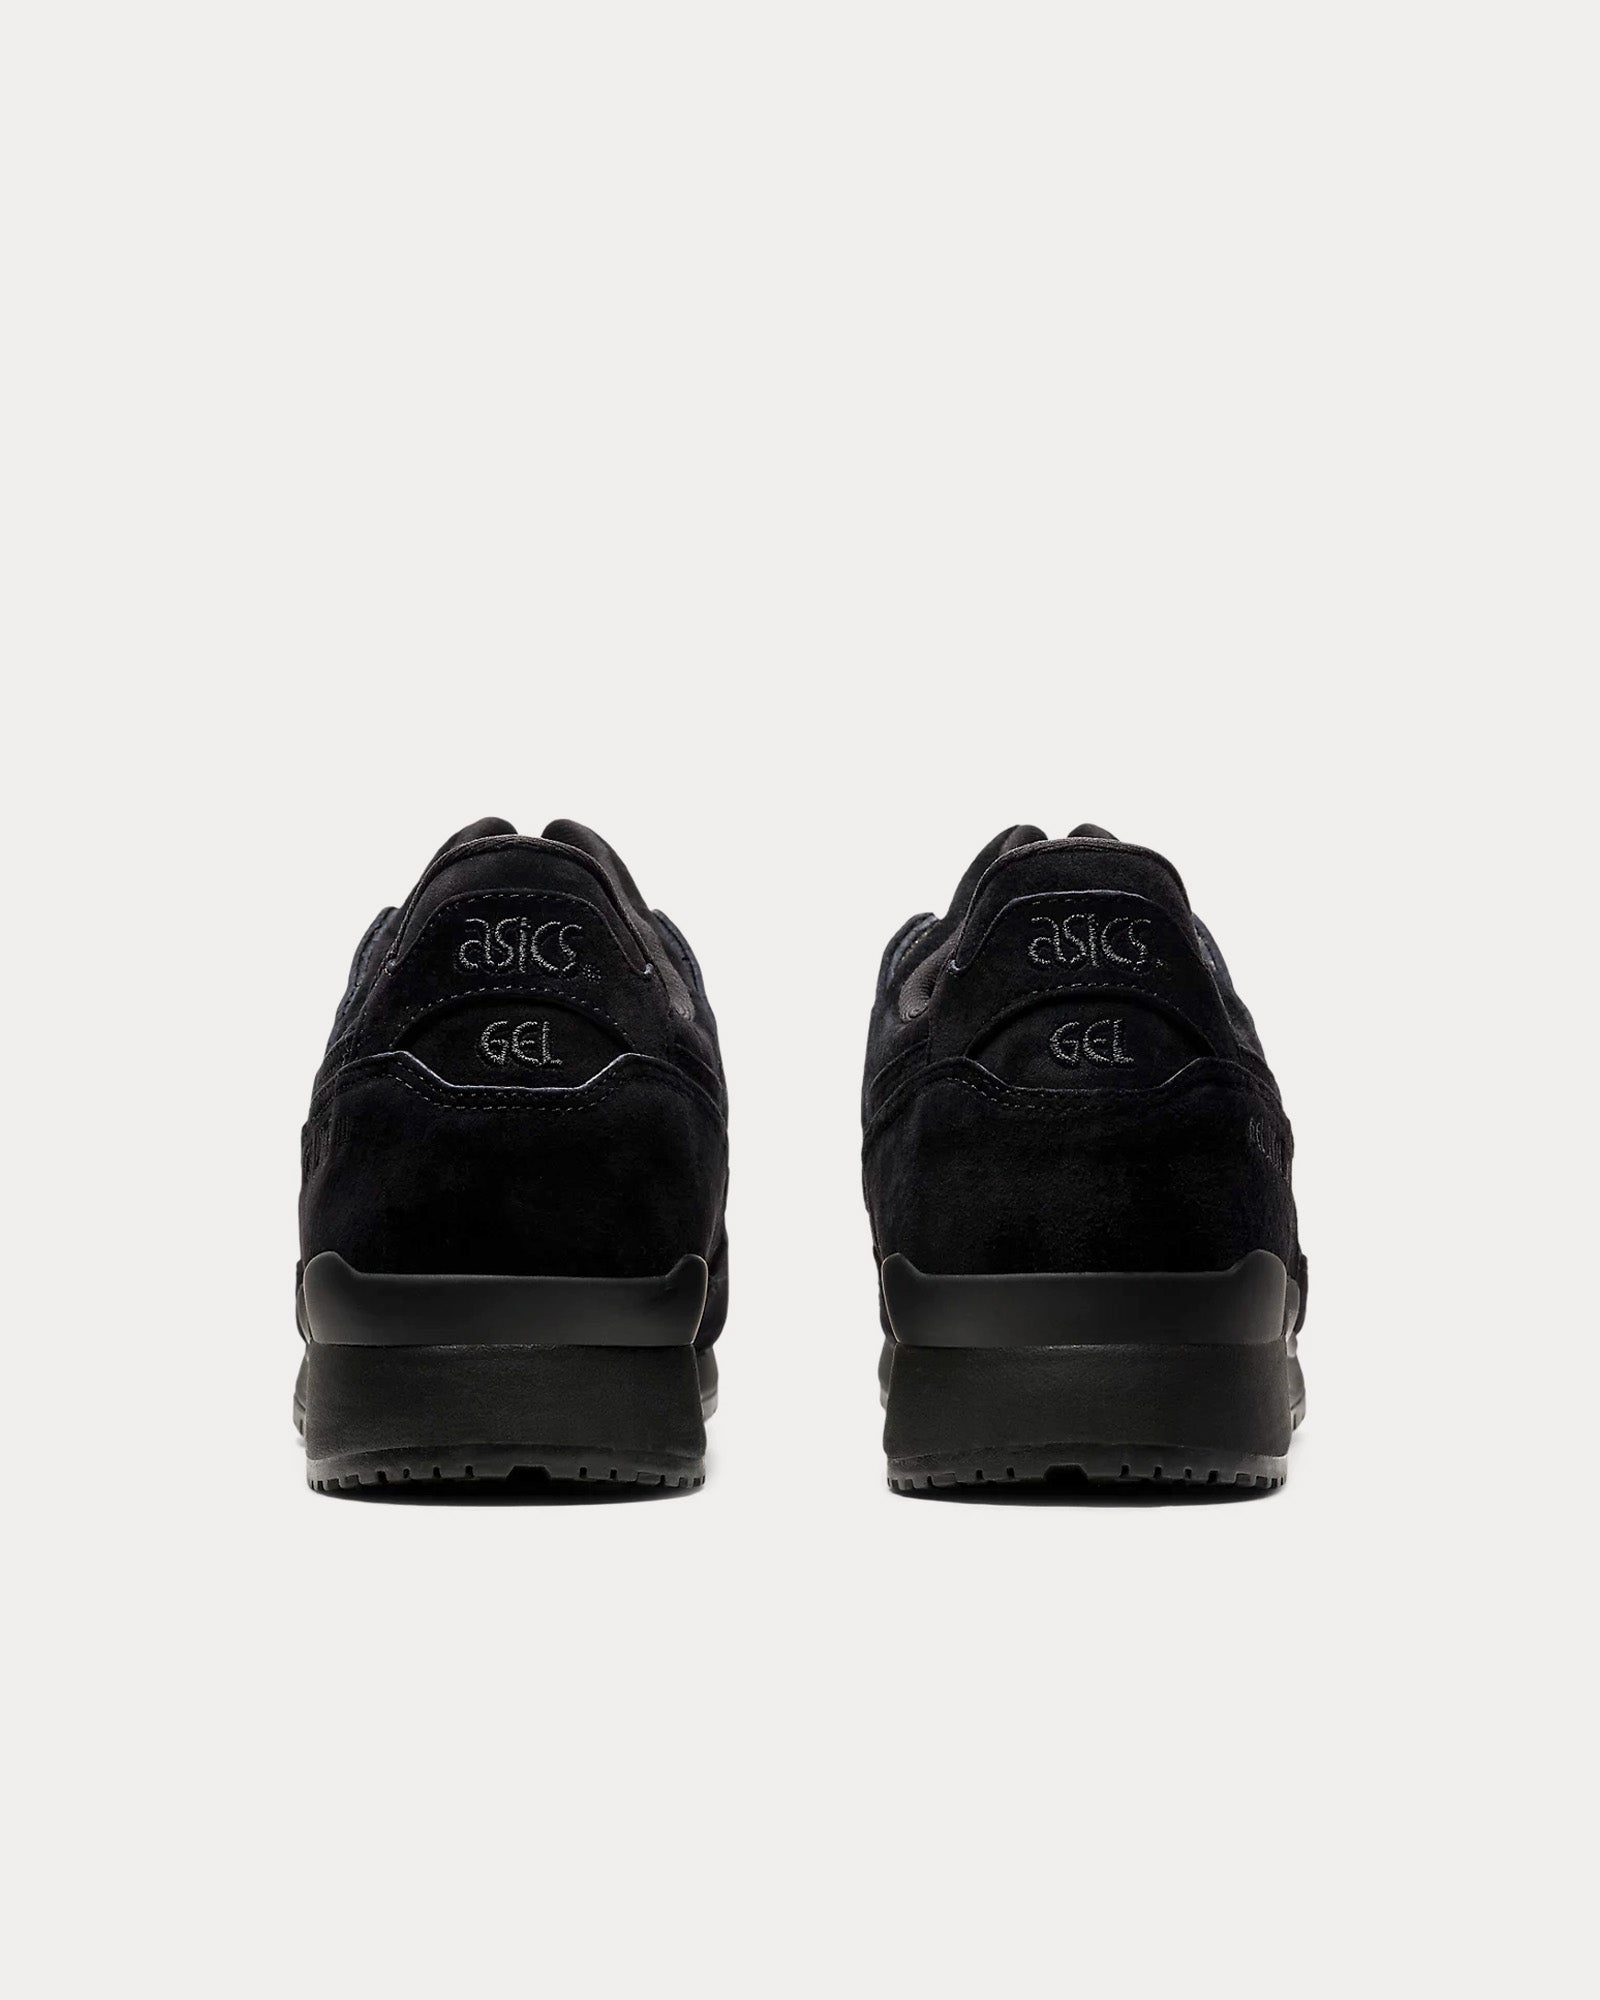 Asics - Gel-Lyte III OG Black / Black Low Top Sneakers